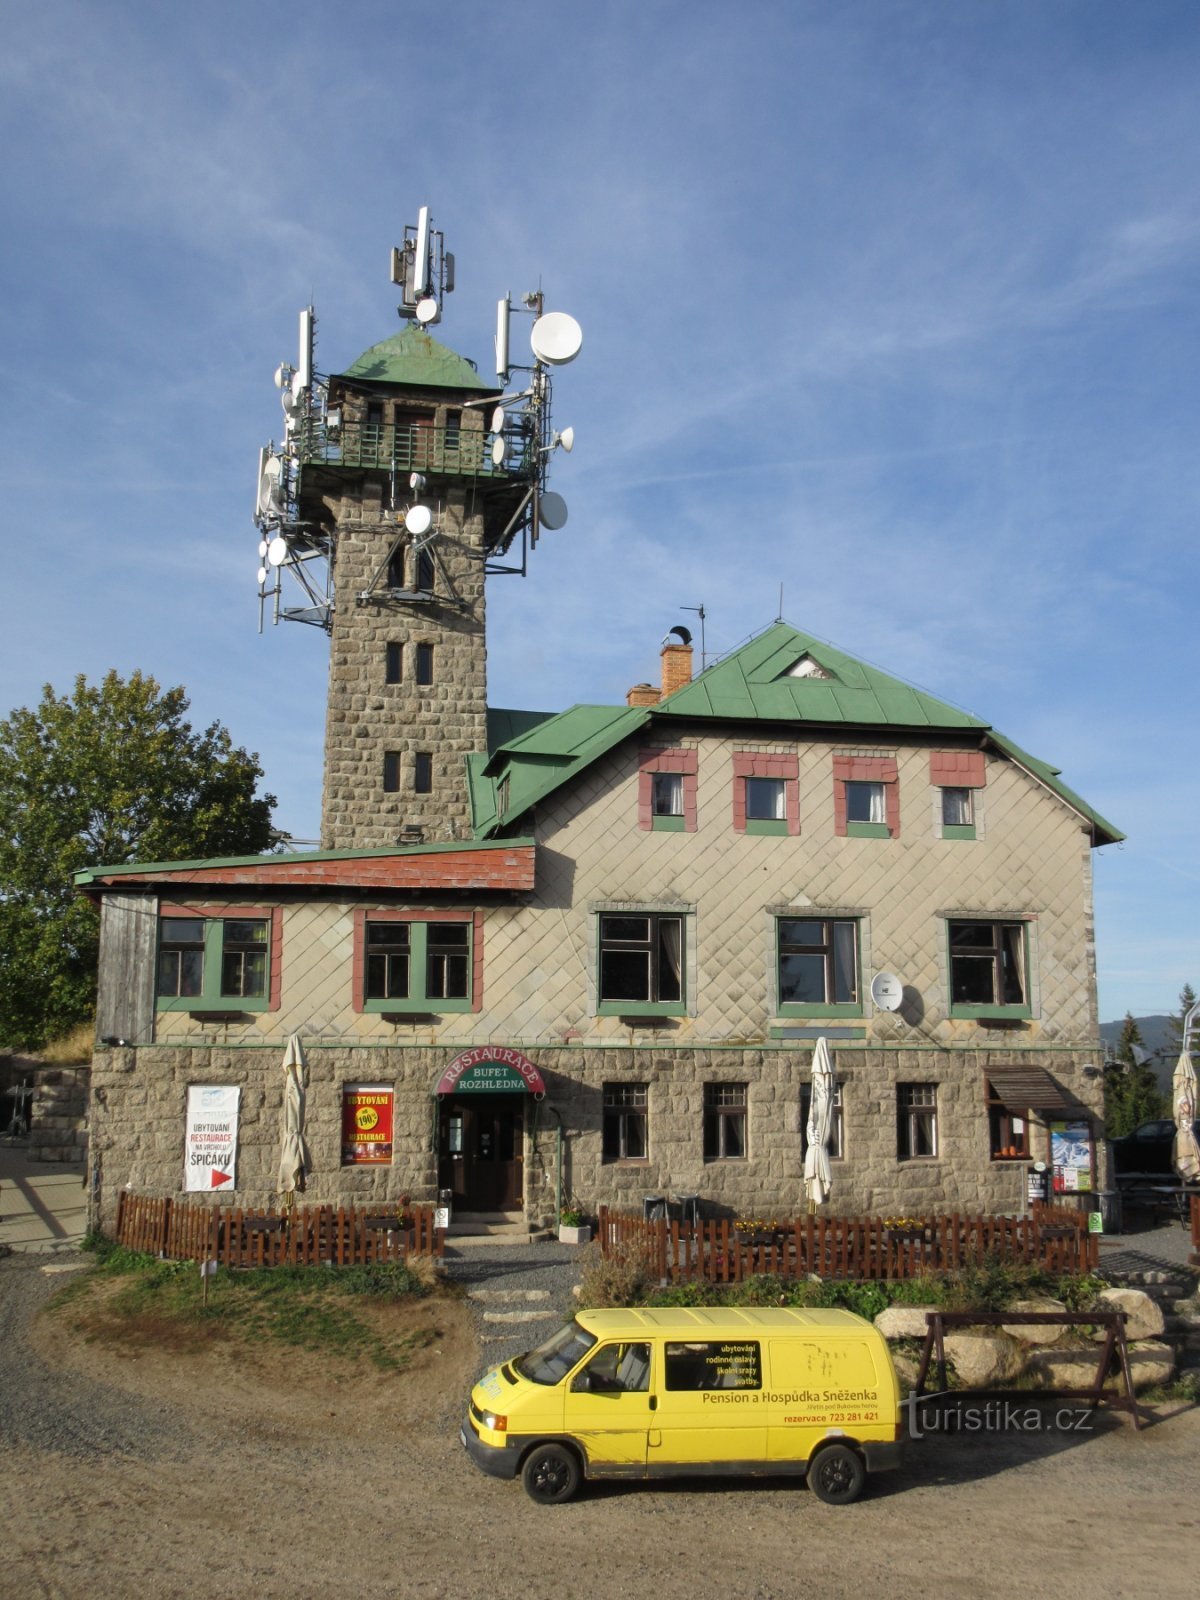 シュピチャークの見張り塔タンヴァルツキー・シュピチャーク